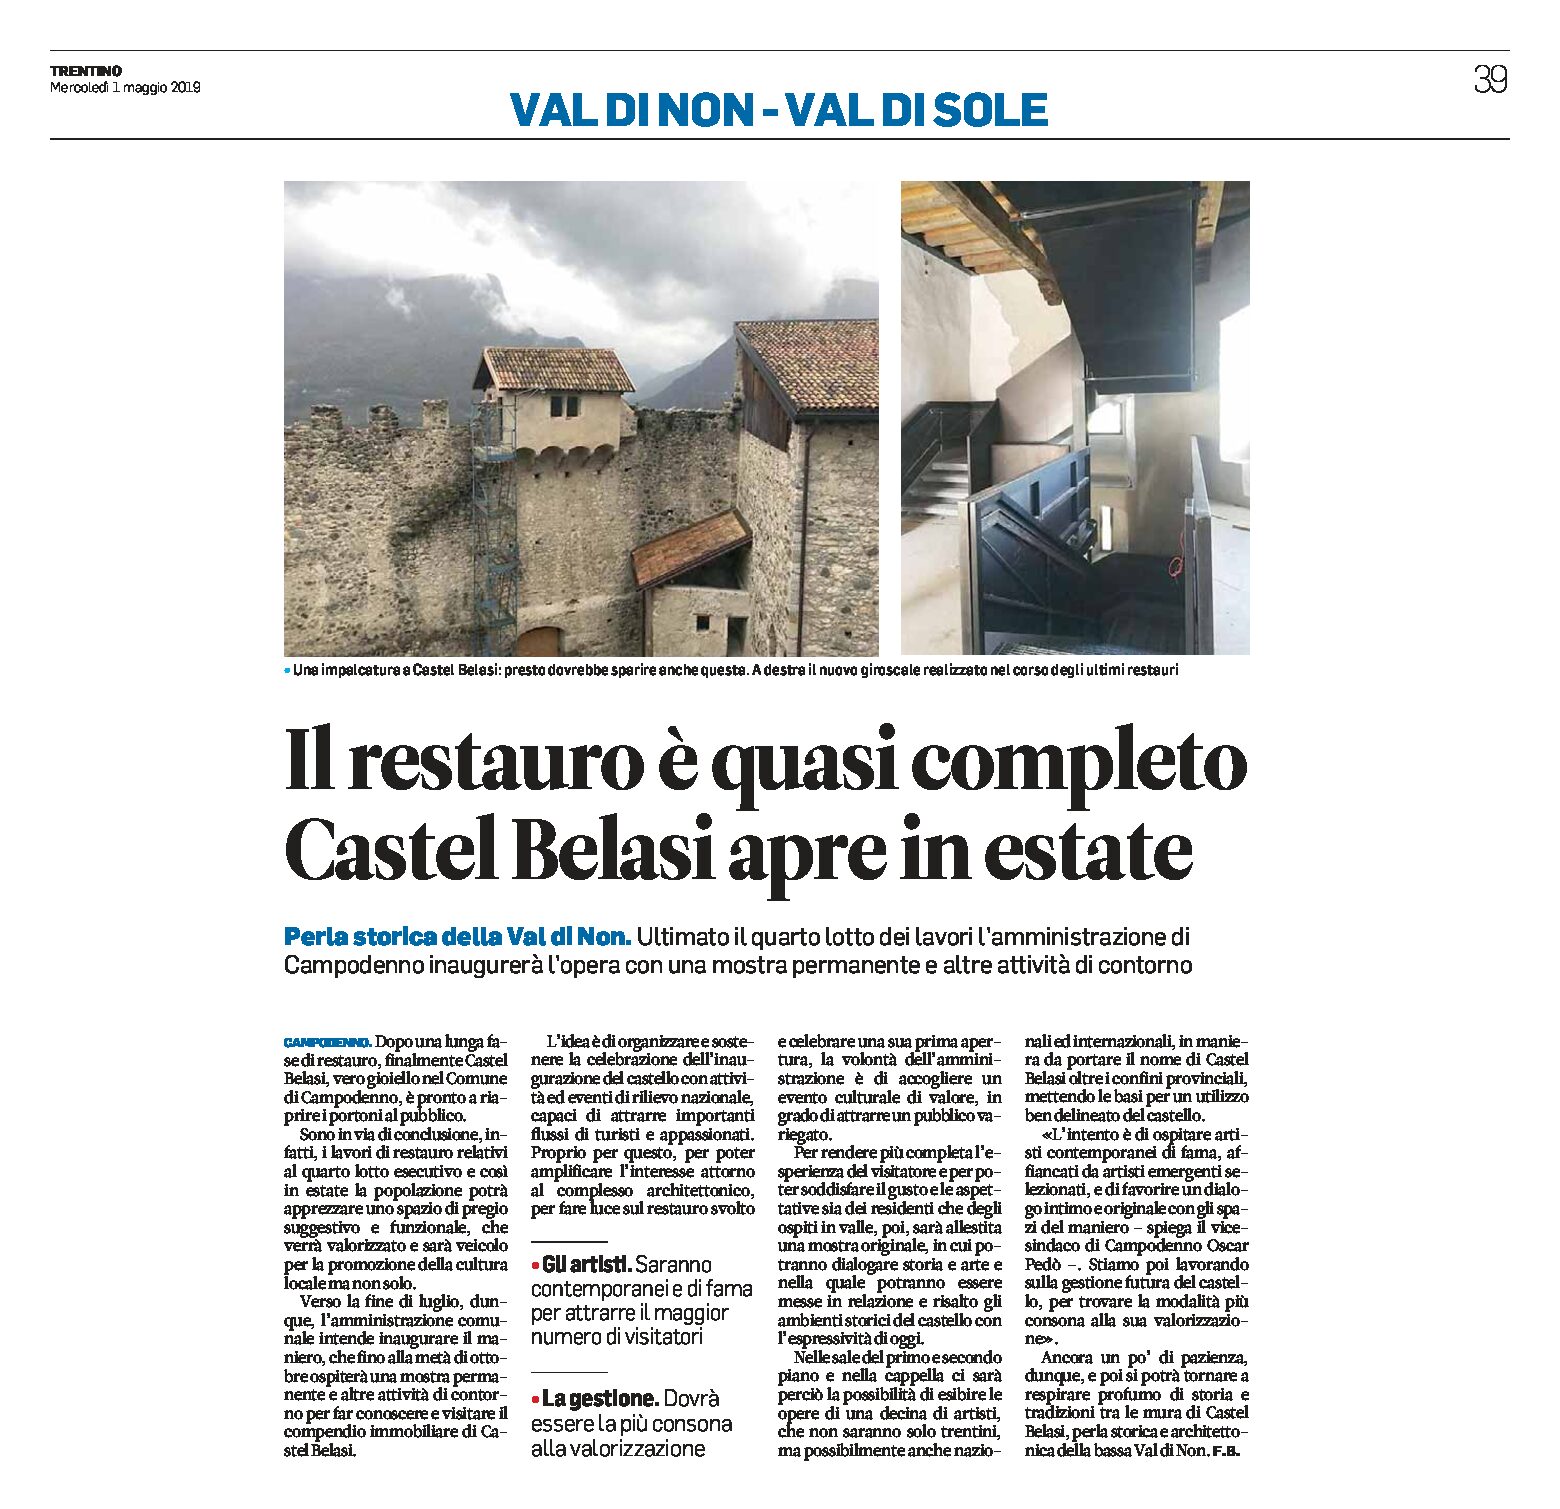 Castel Belasi: il restauro è quasi completo, riaprirà in estate